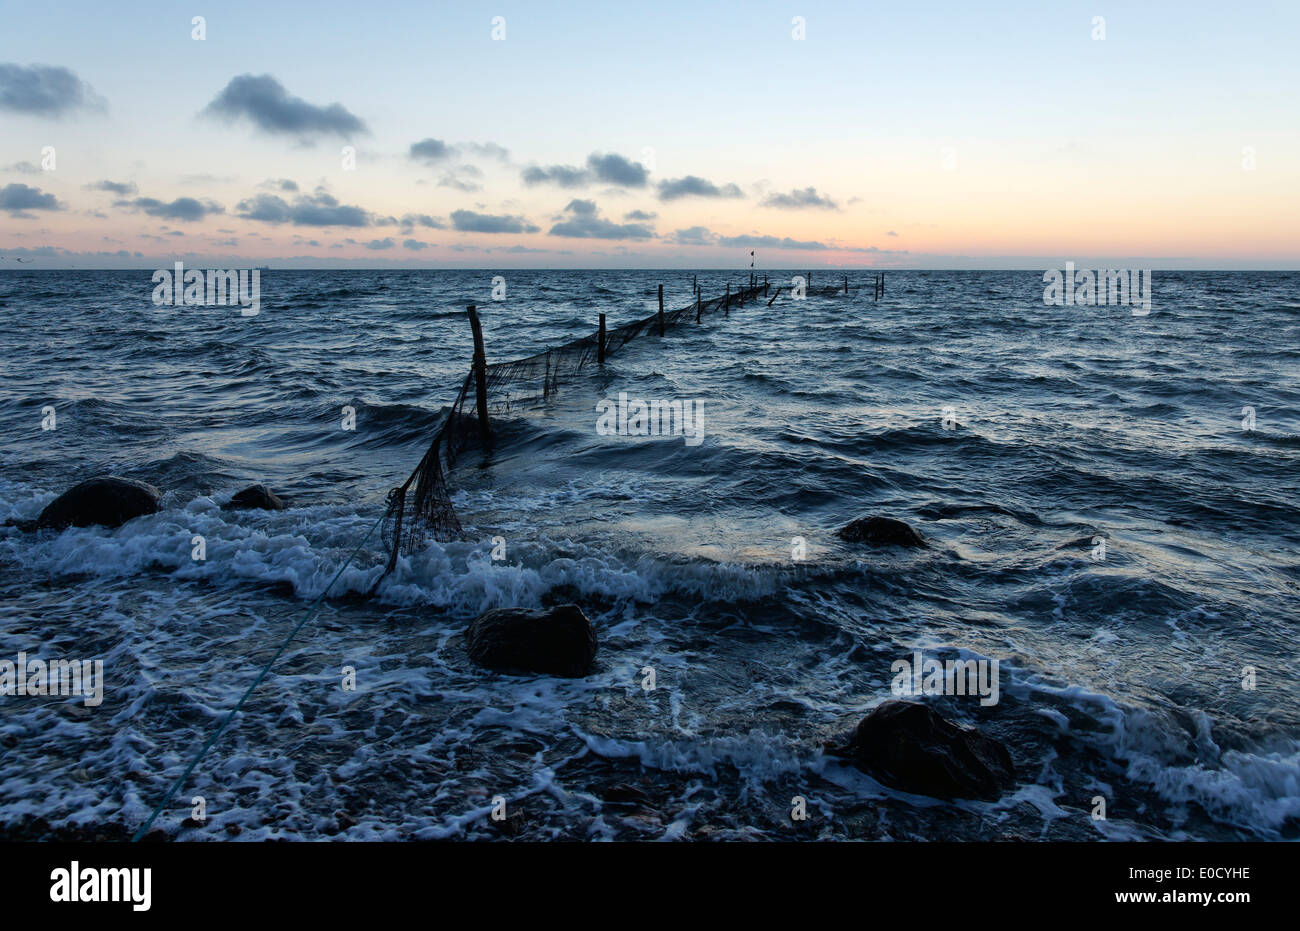 Vue sur la mer Baltique, ii, l'île de Langeland, Danemark, Europe Banque D'Images